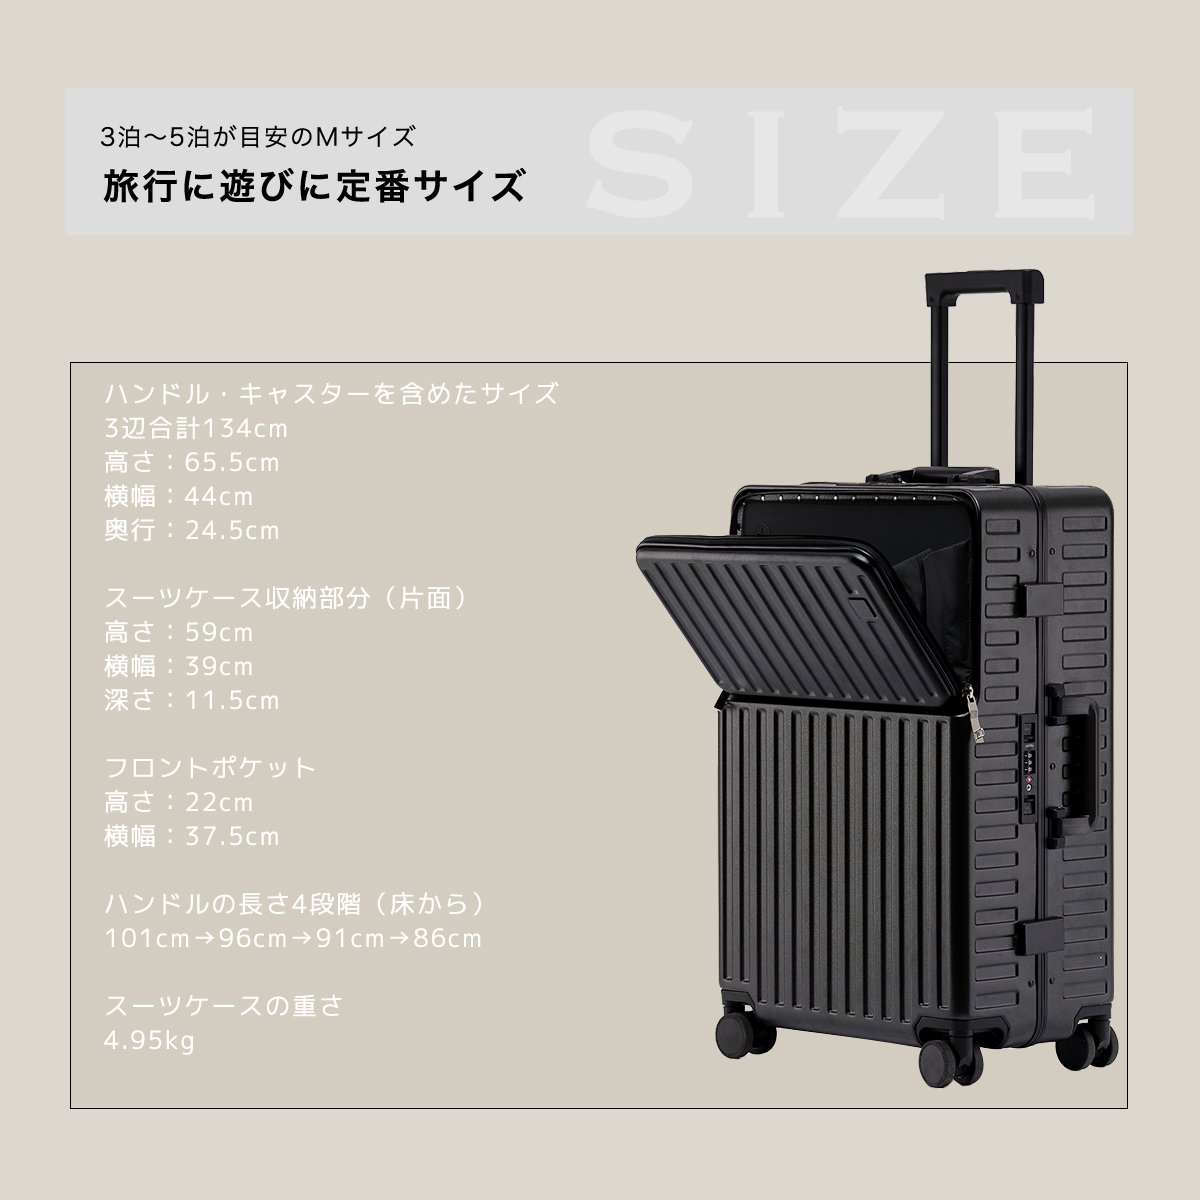 OUNCE 多機能 スーツケース アルミフレーム Mサイズ STYLISH JAPAN 【お得なクーポン配信中】 mfsc2067-m